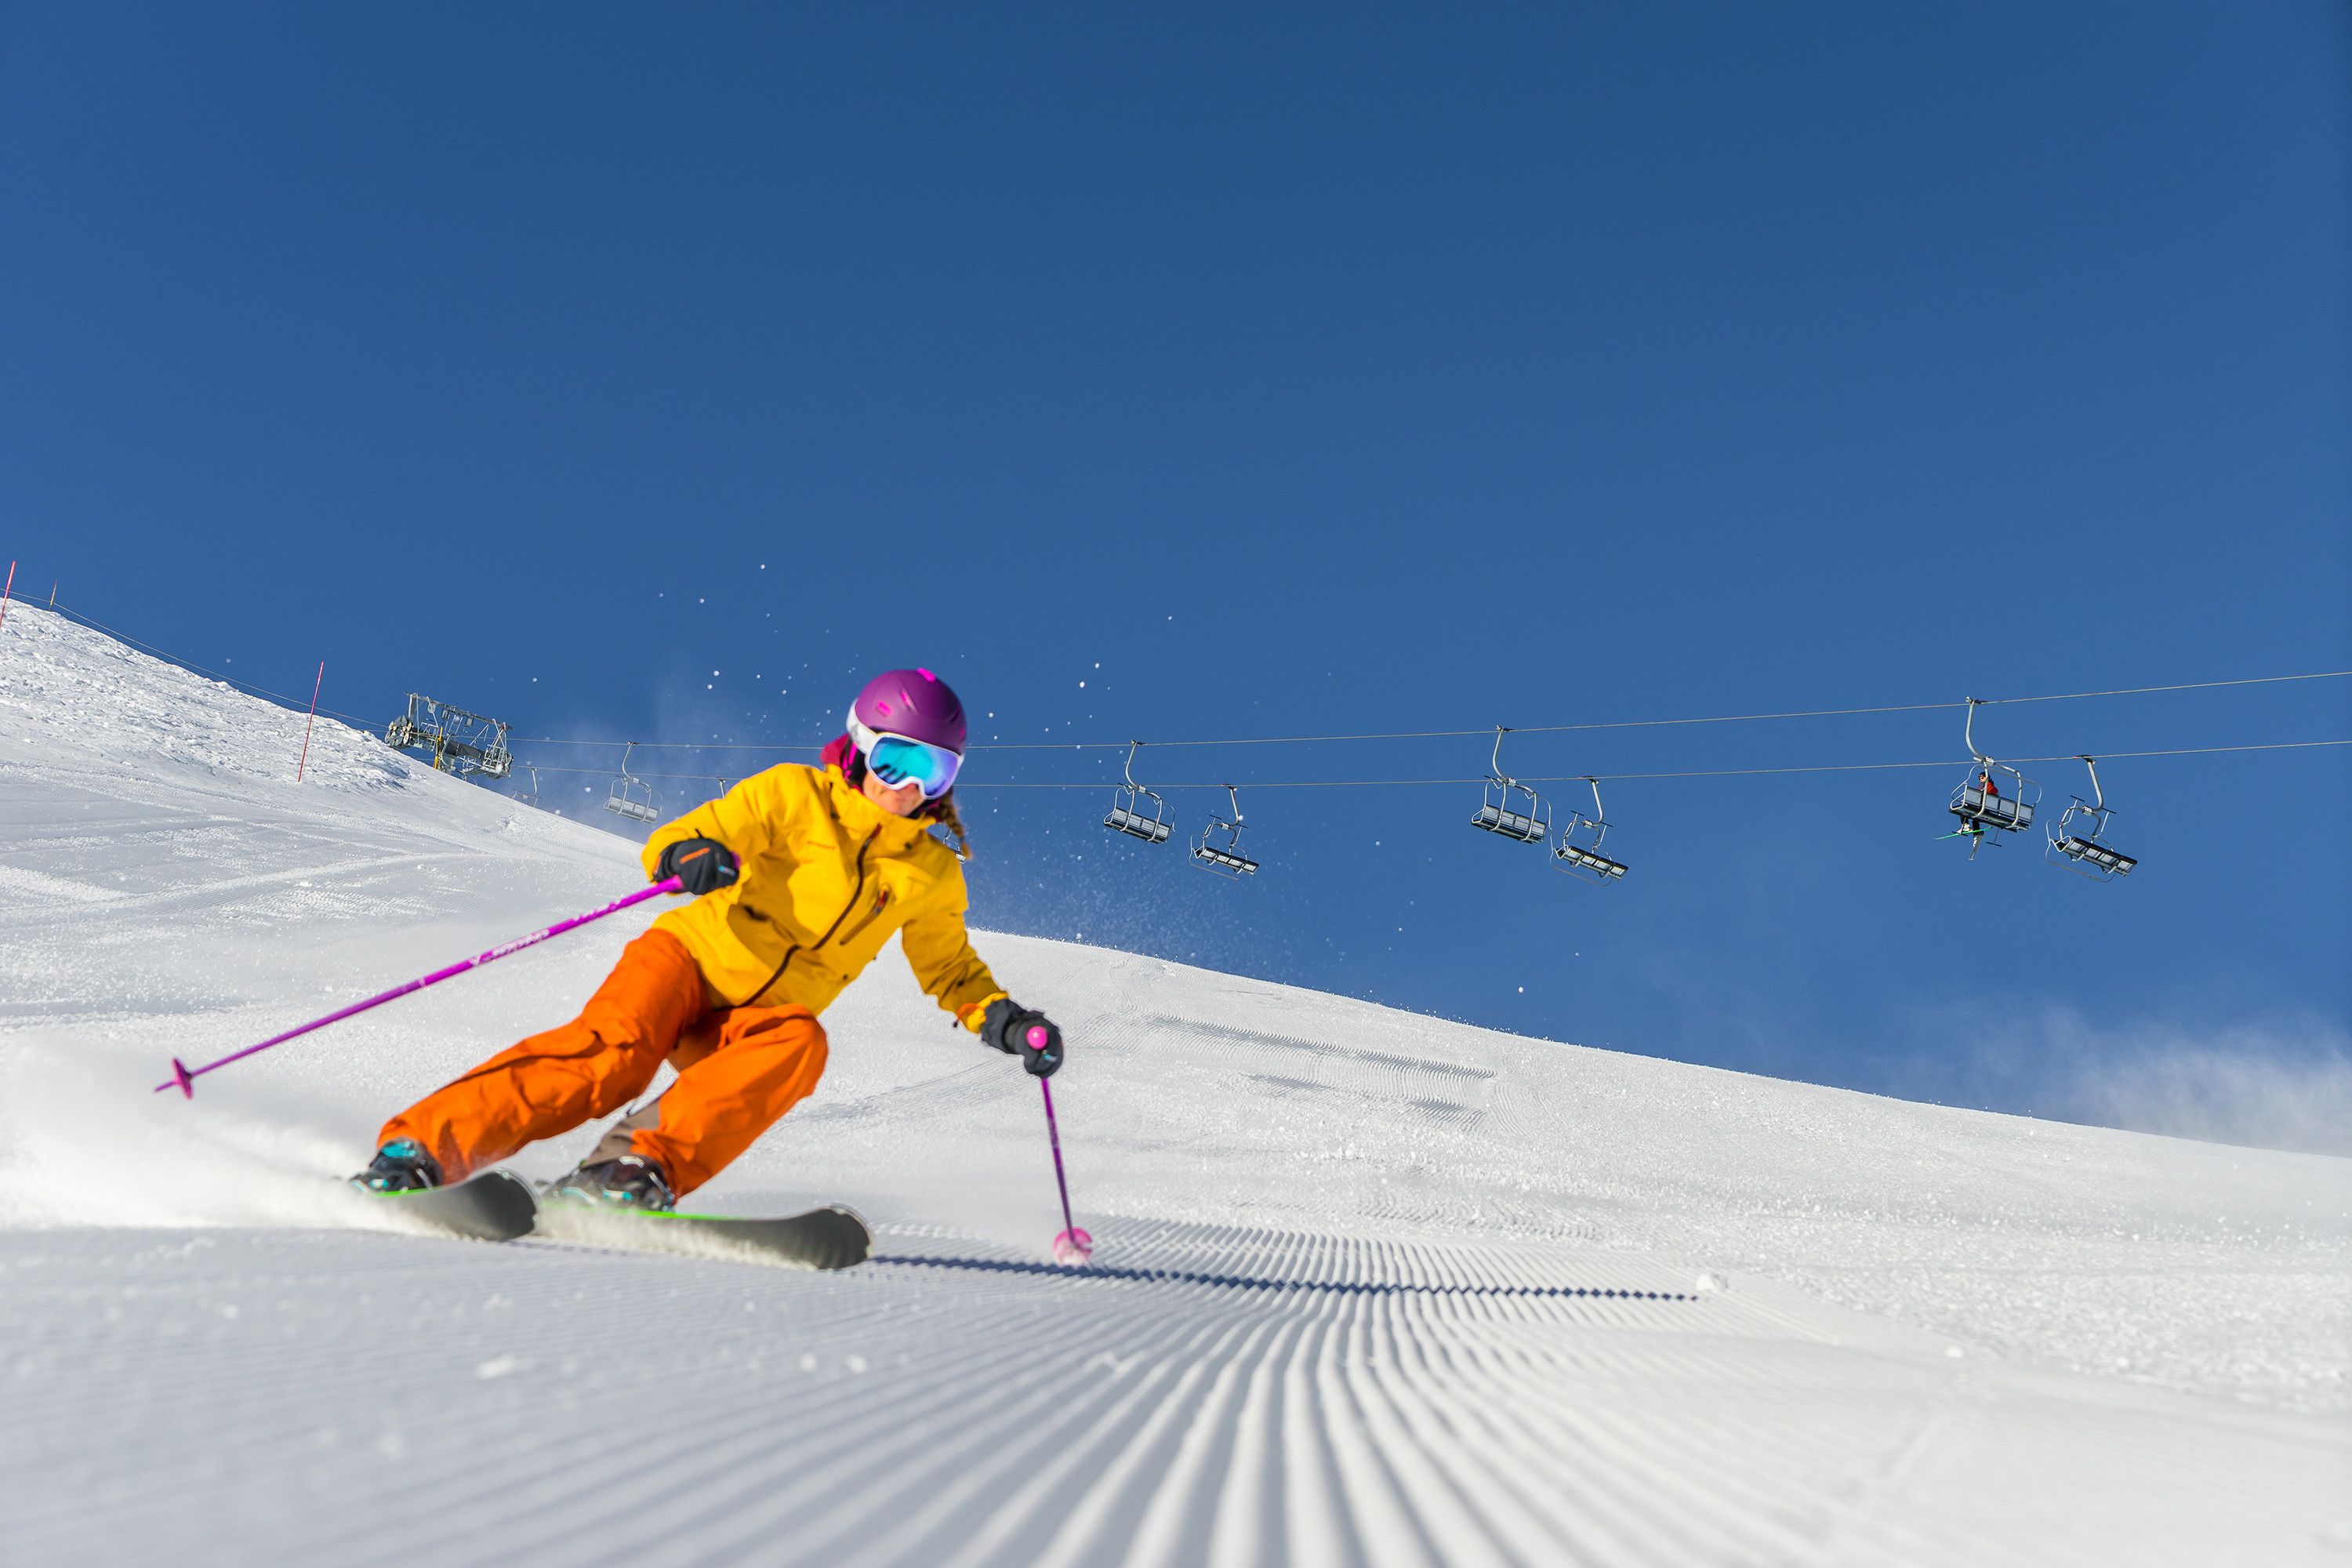 Sneeuw is erg belangrijk voor waardering van skigebied